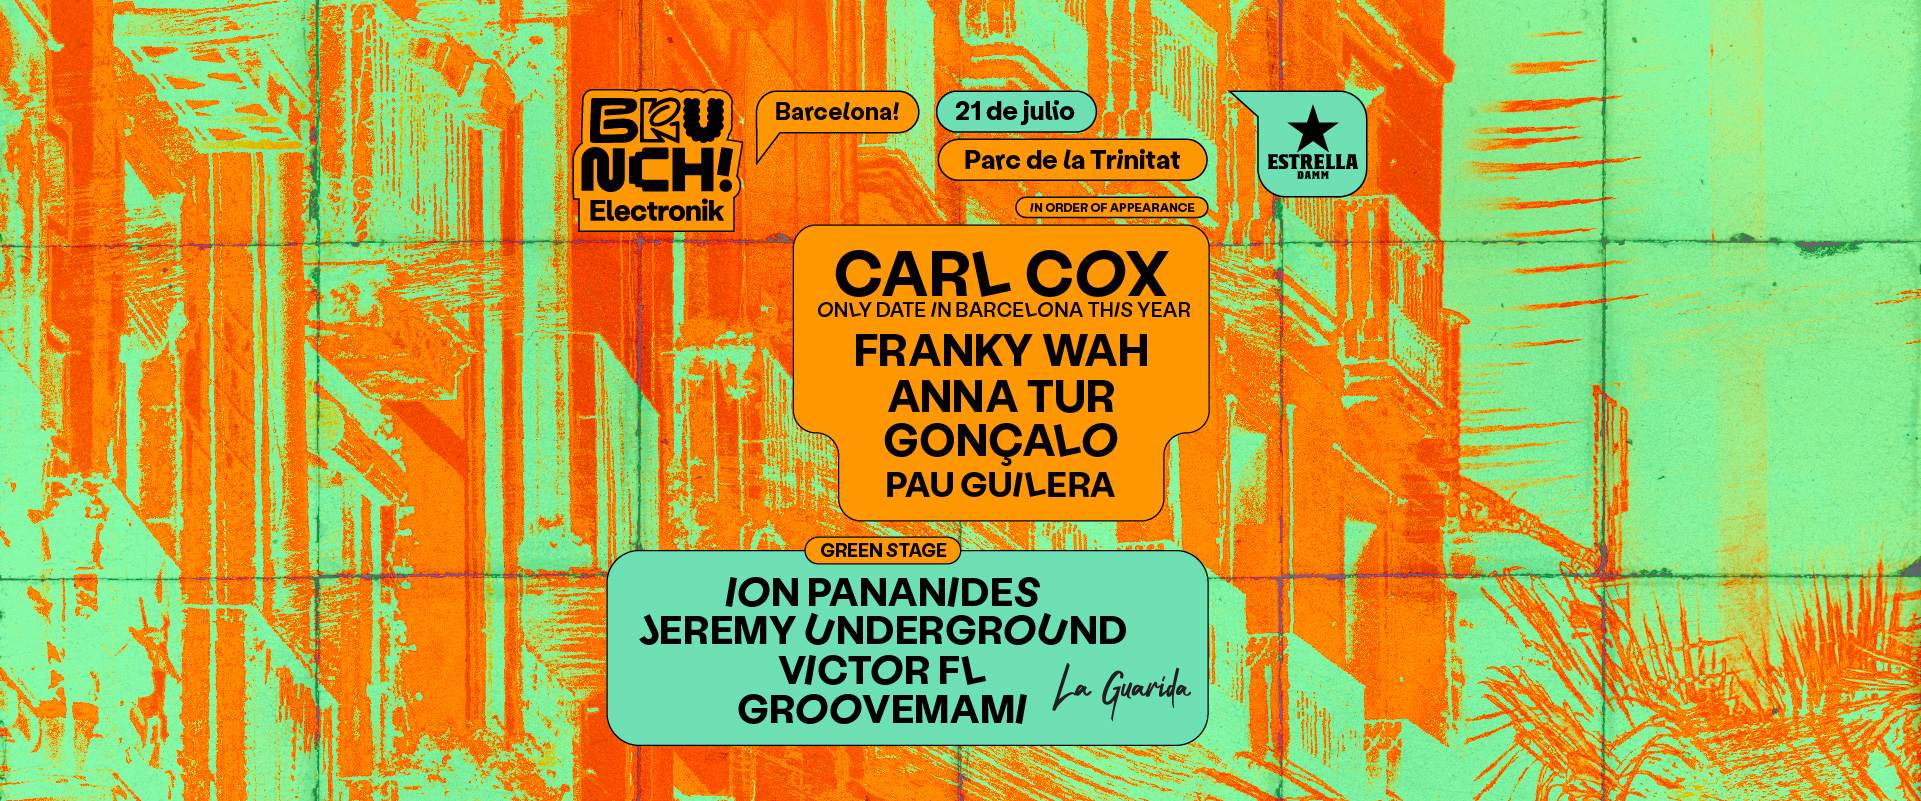 Brunch Electronik Barcelona #12 Carl Cox, Franky Wah, Anna Tur, Gonzalo, Pau Guilera y más - フライヤー表